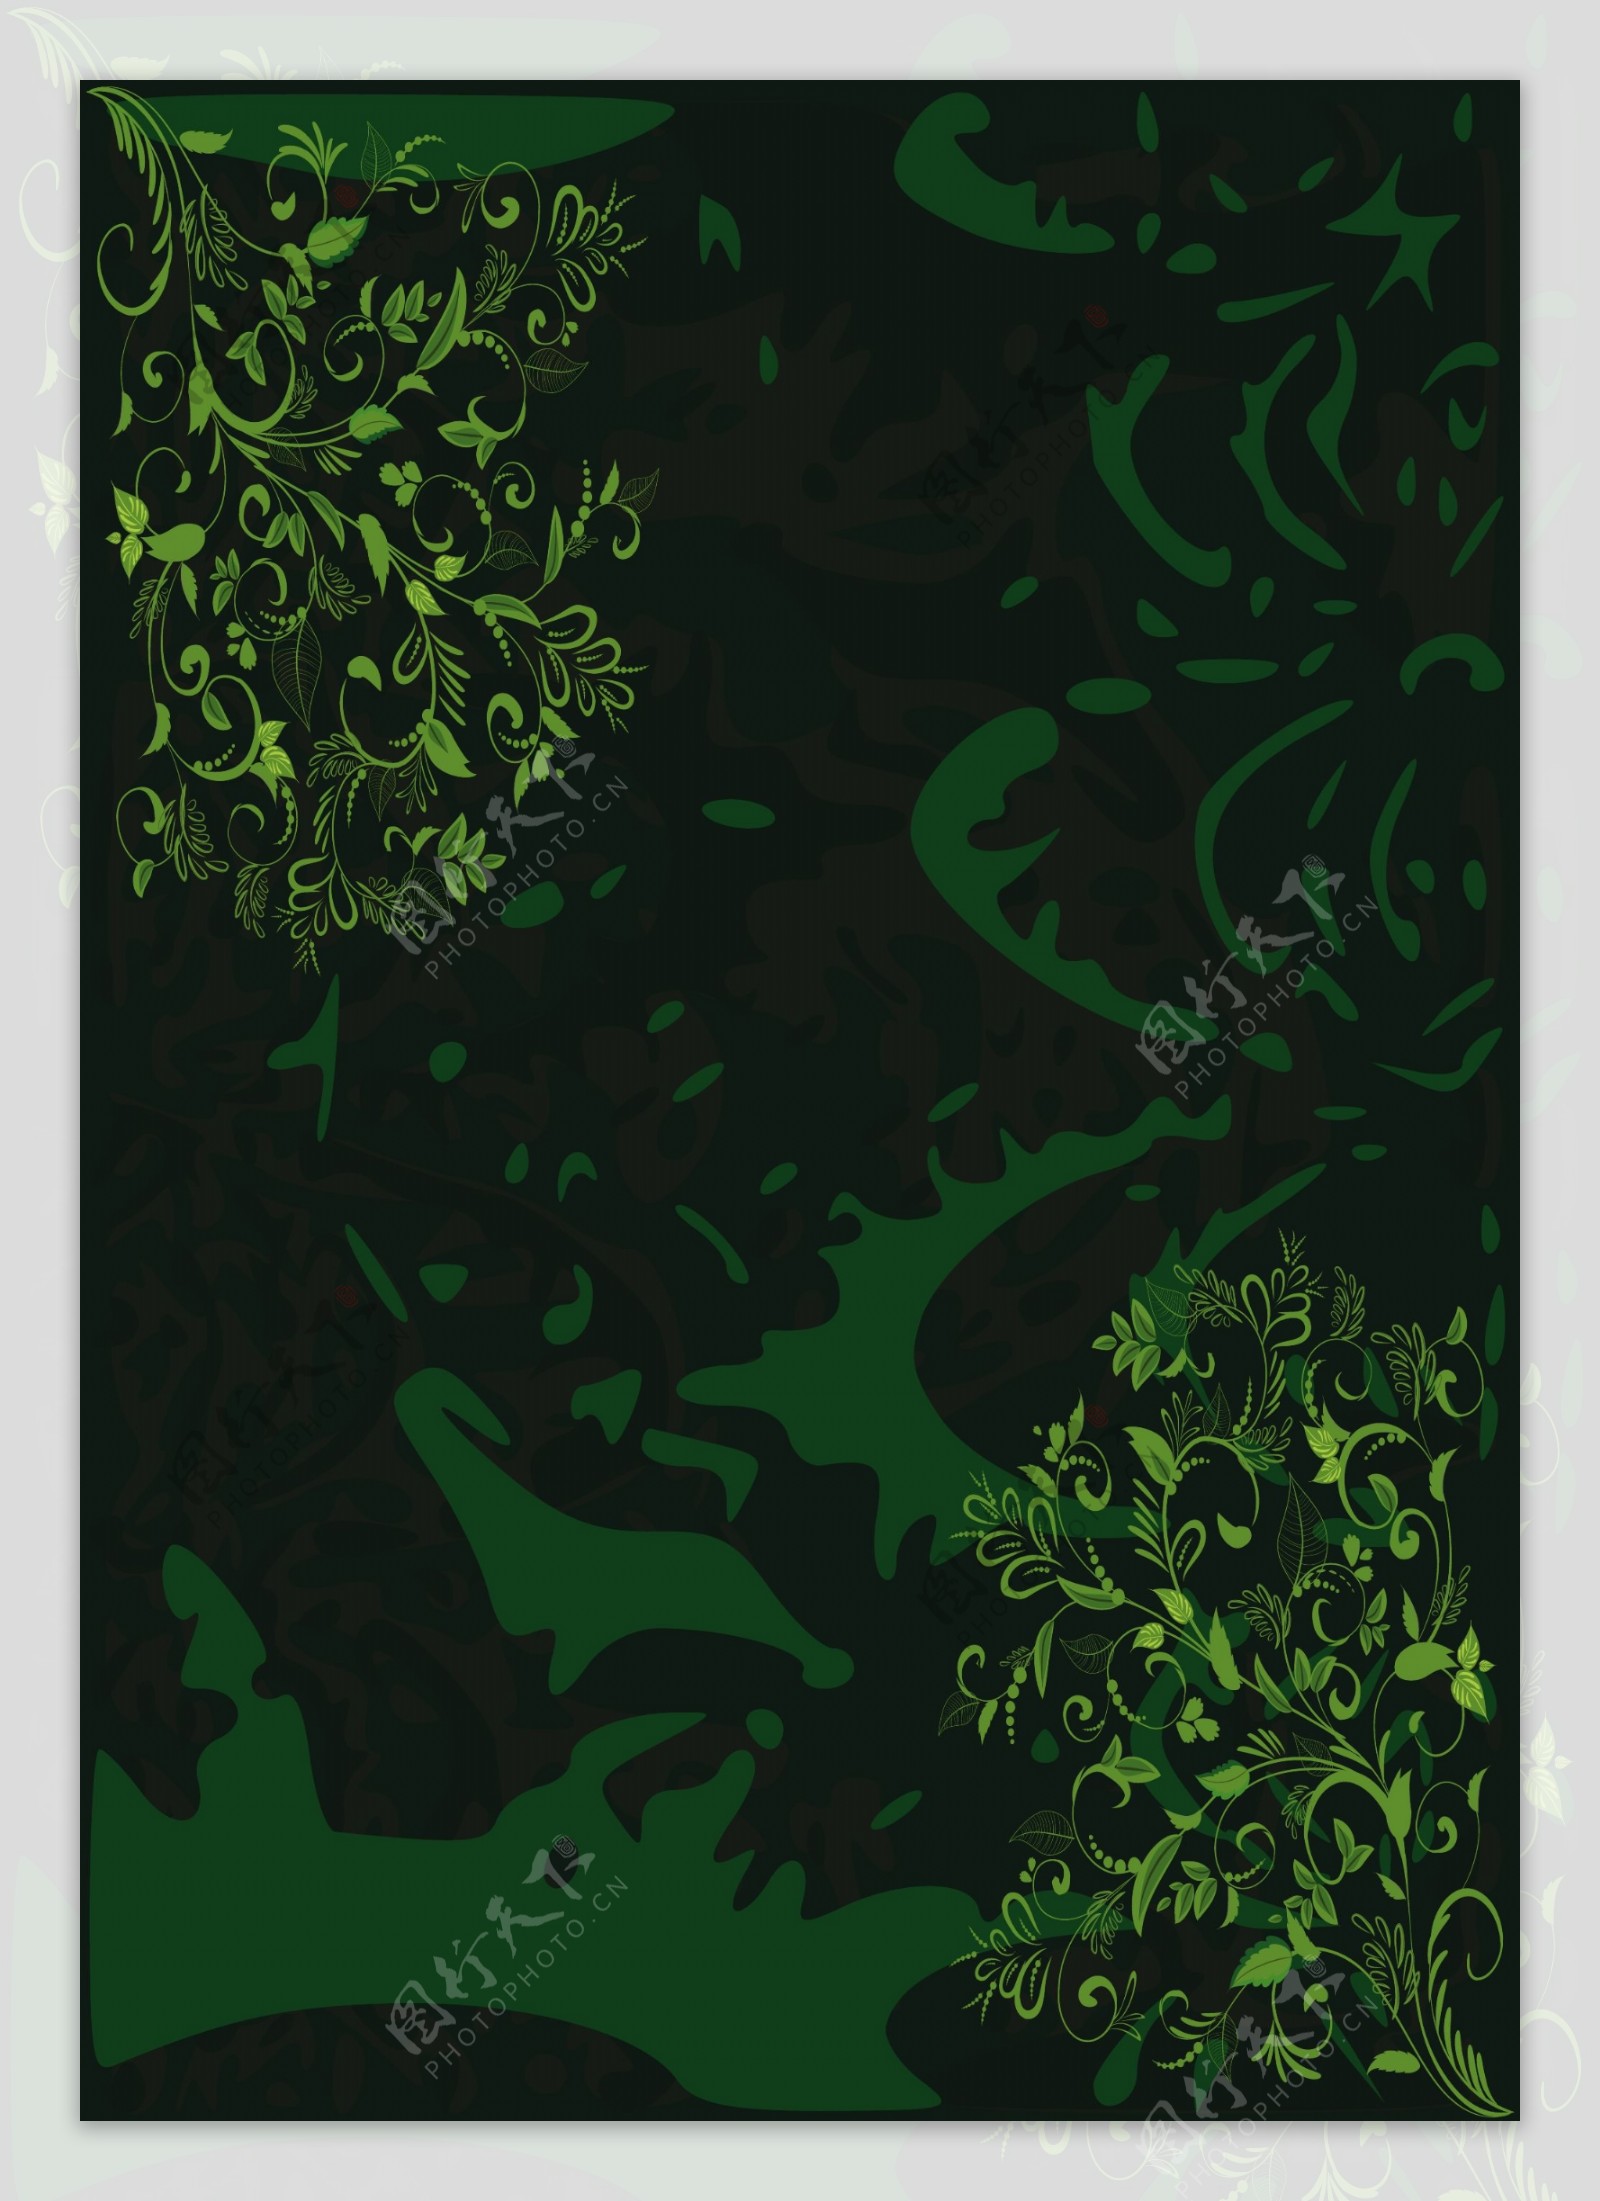 繁荣绿色漩涡花卉背景底图海报图